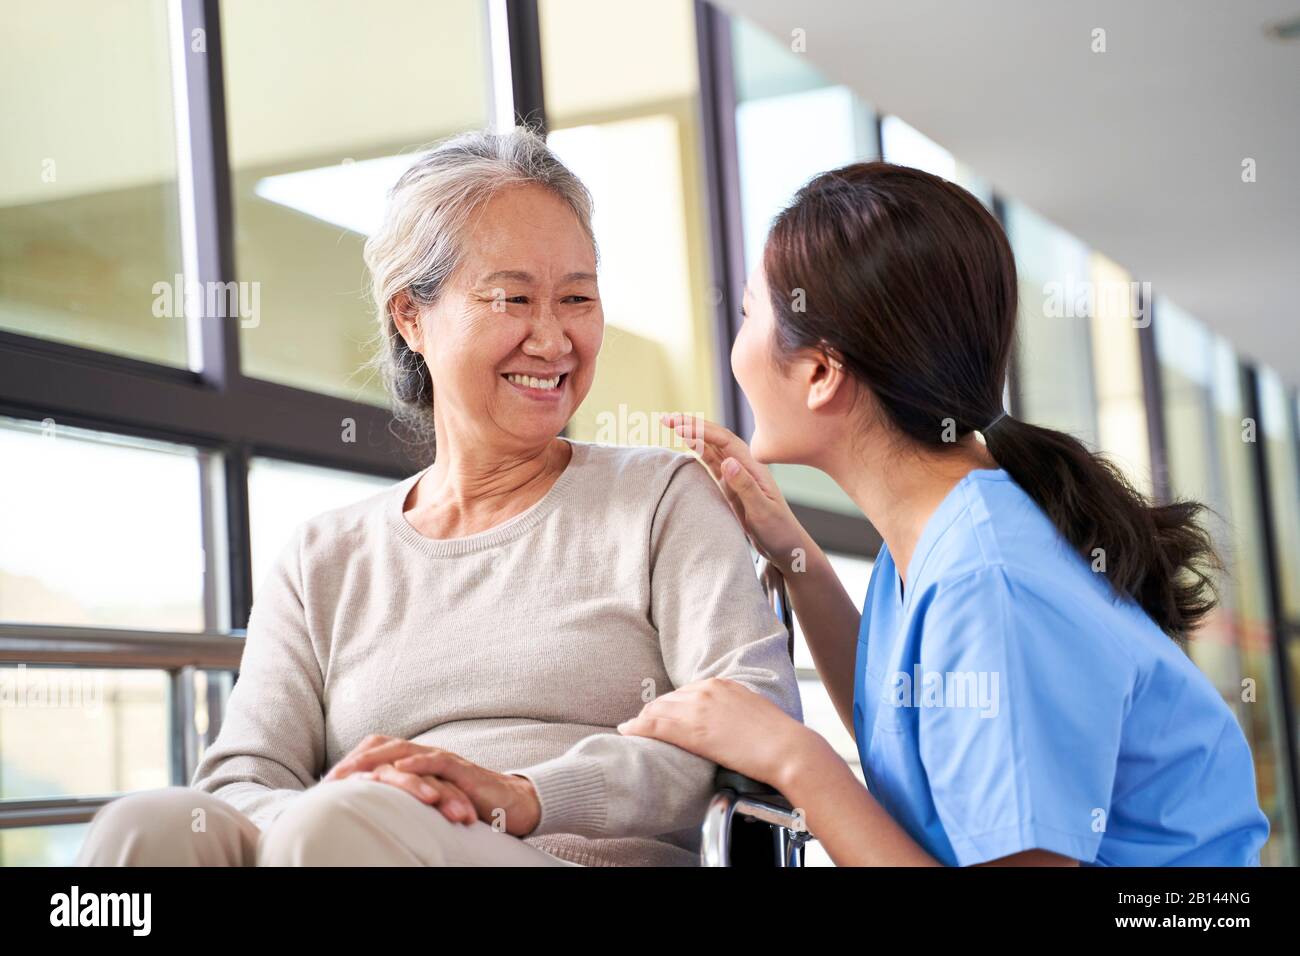 personnel soignant sympathique de la maison de soins parlant à la femme asiatique senior dans le couloir Banque D'Images